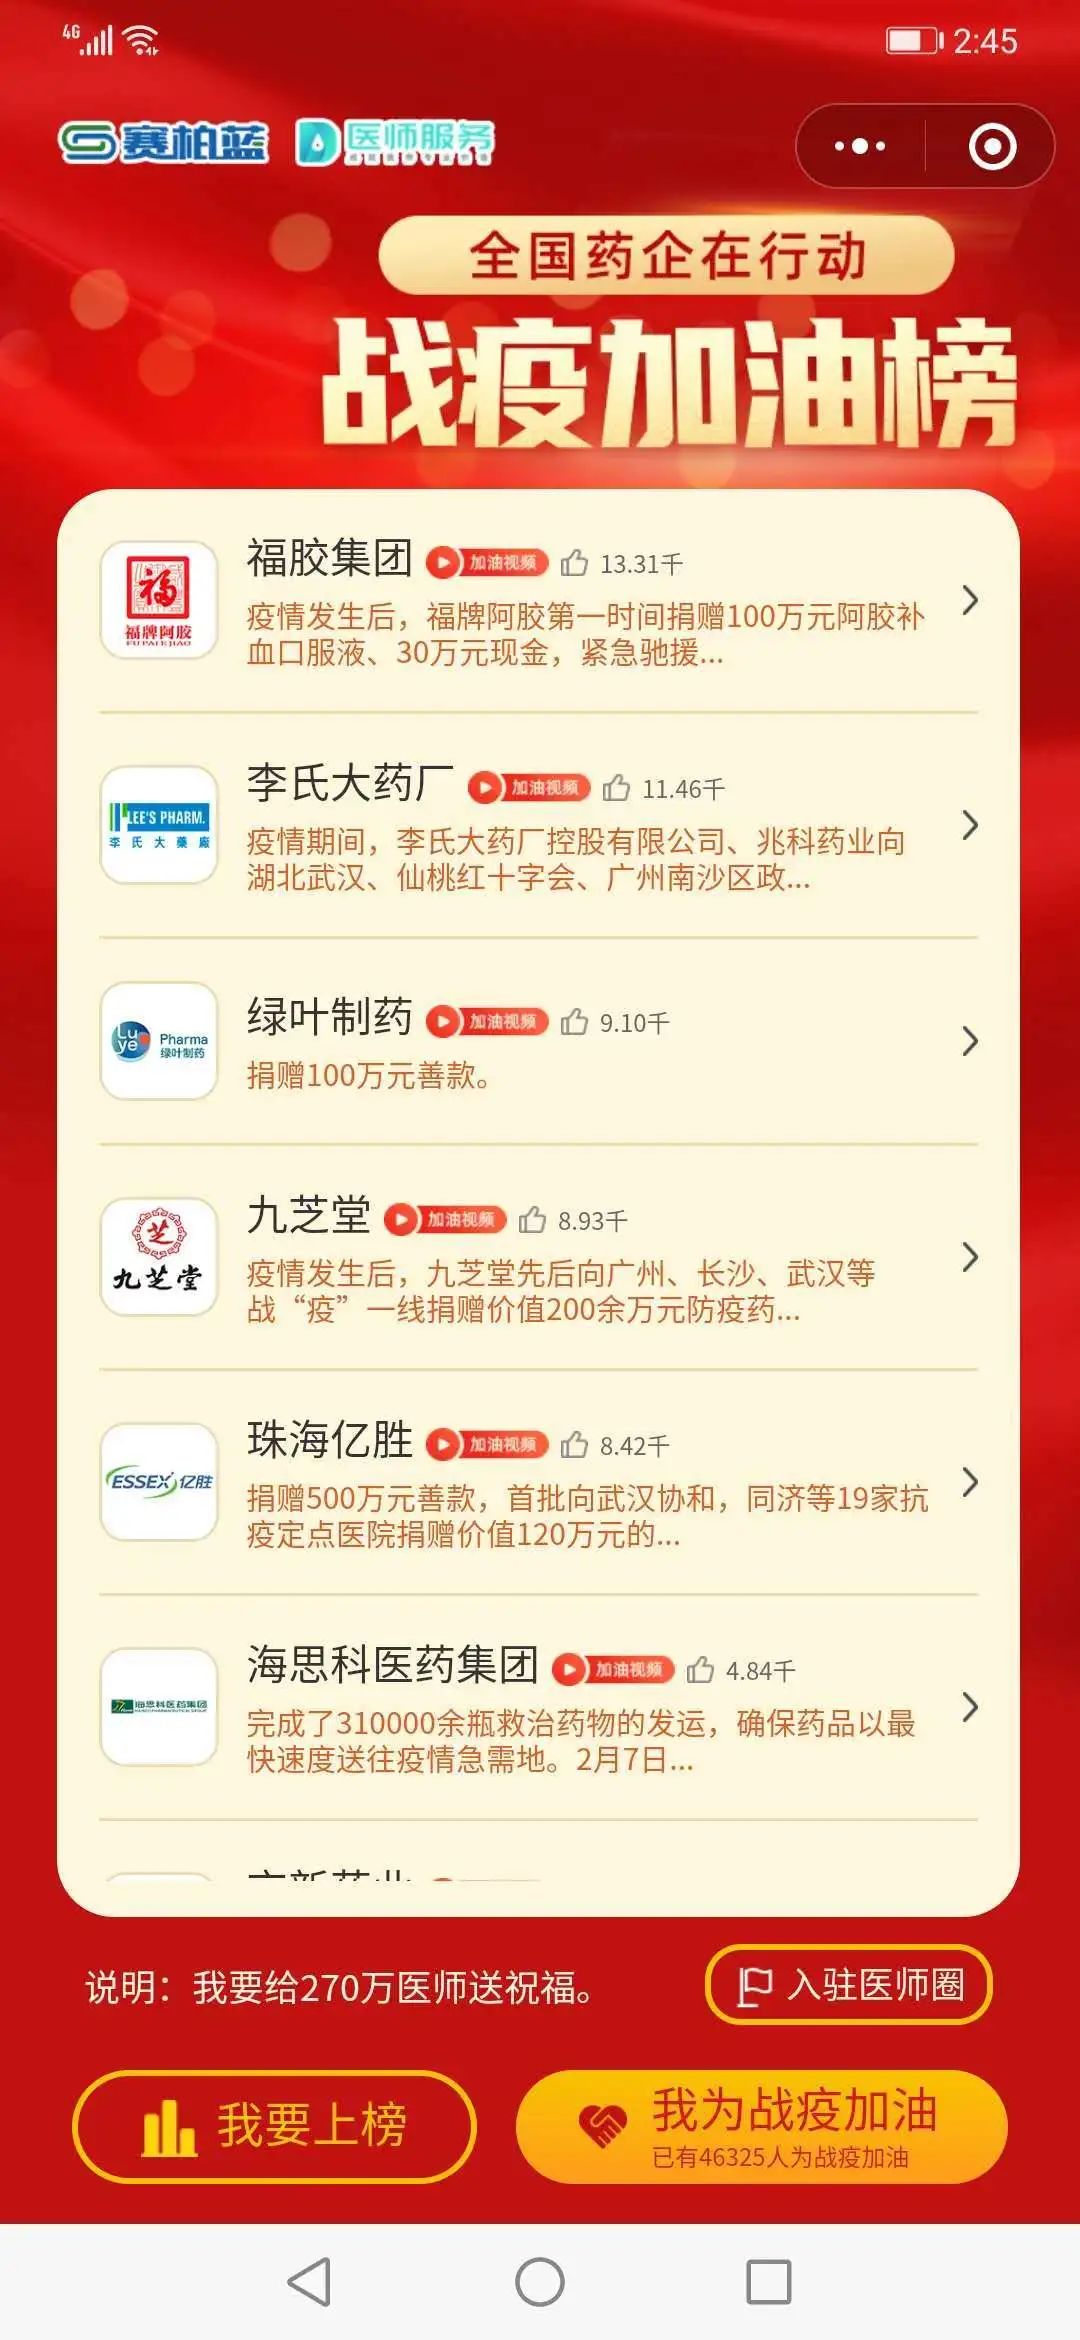 福胶集团荣登赛柏蓝“战疫加油榜”榜首